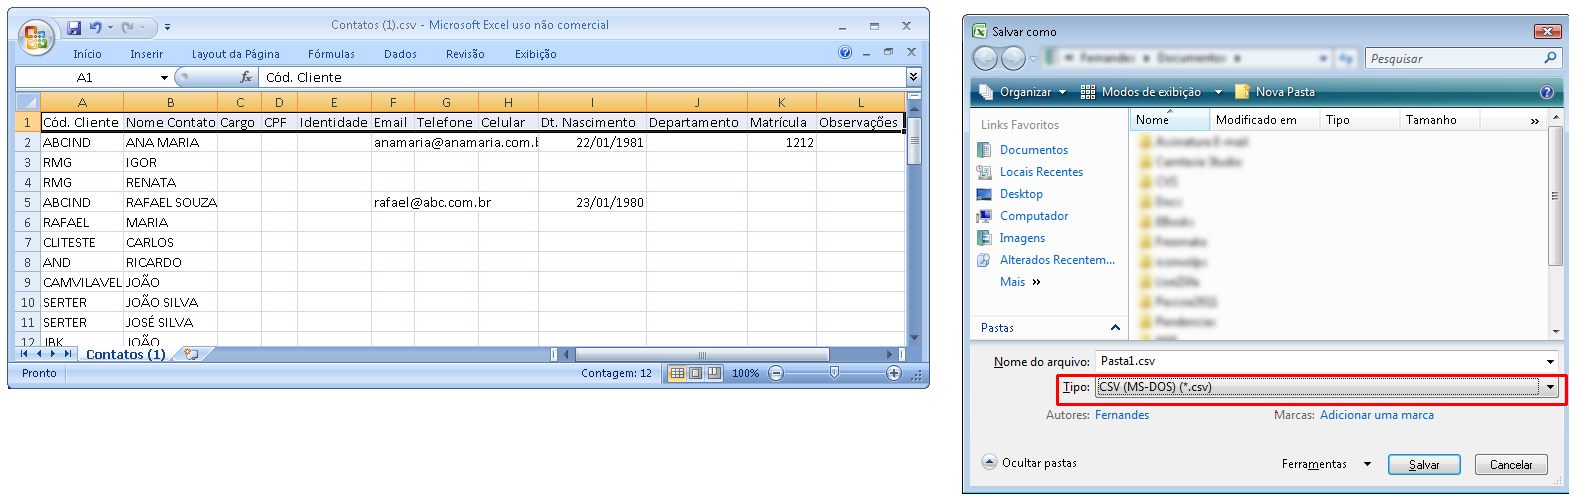 Exemplo de como criar o arquivo contendo contatos de clientes para importar para o Wintour